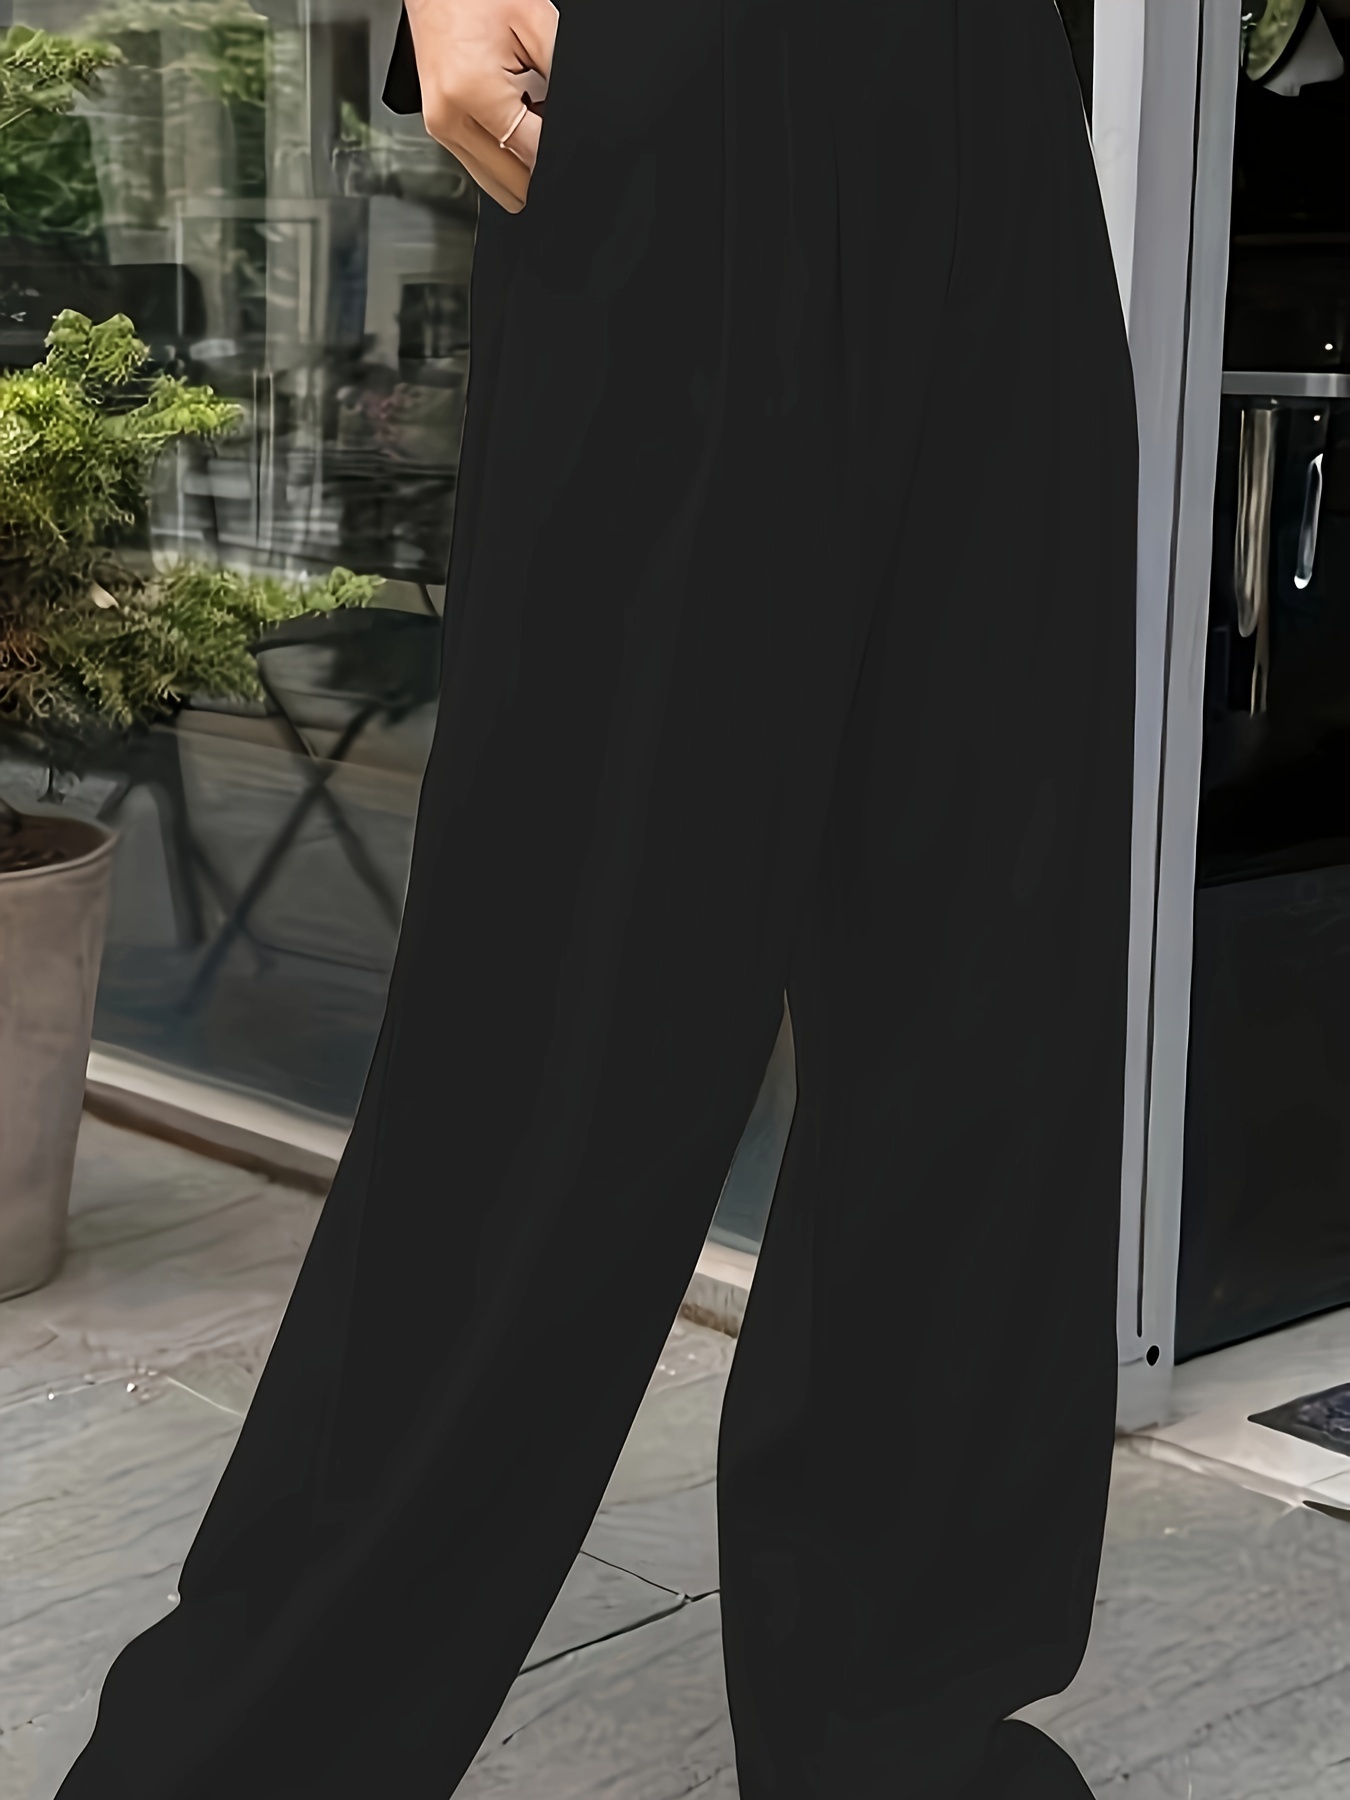 Plus Size Women Black Pants Casual Loose Stretch Suit Pants Korean